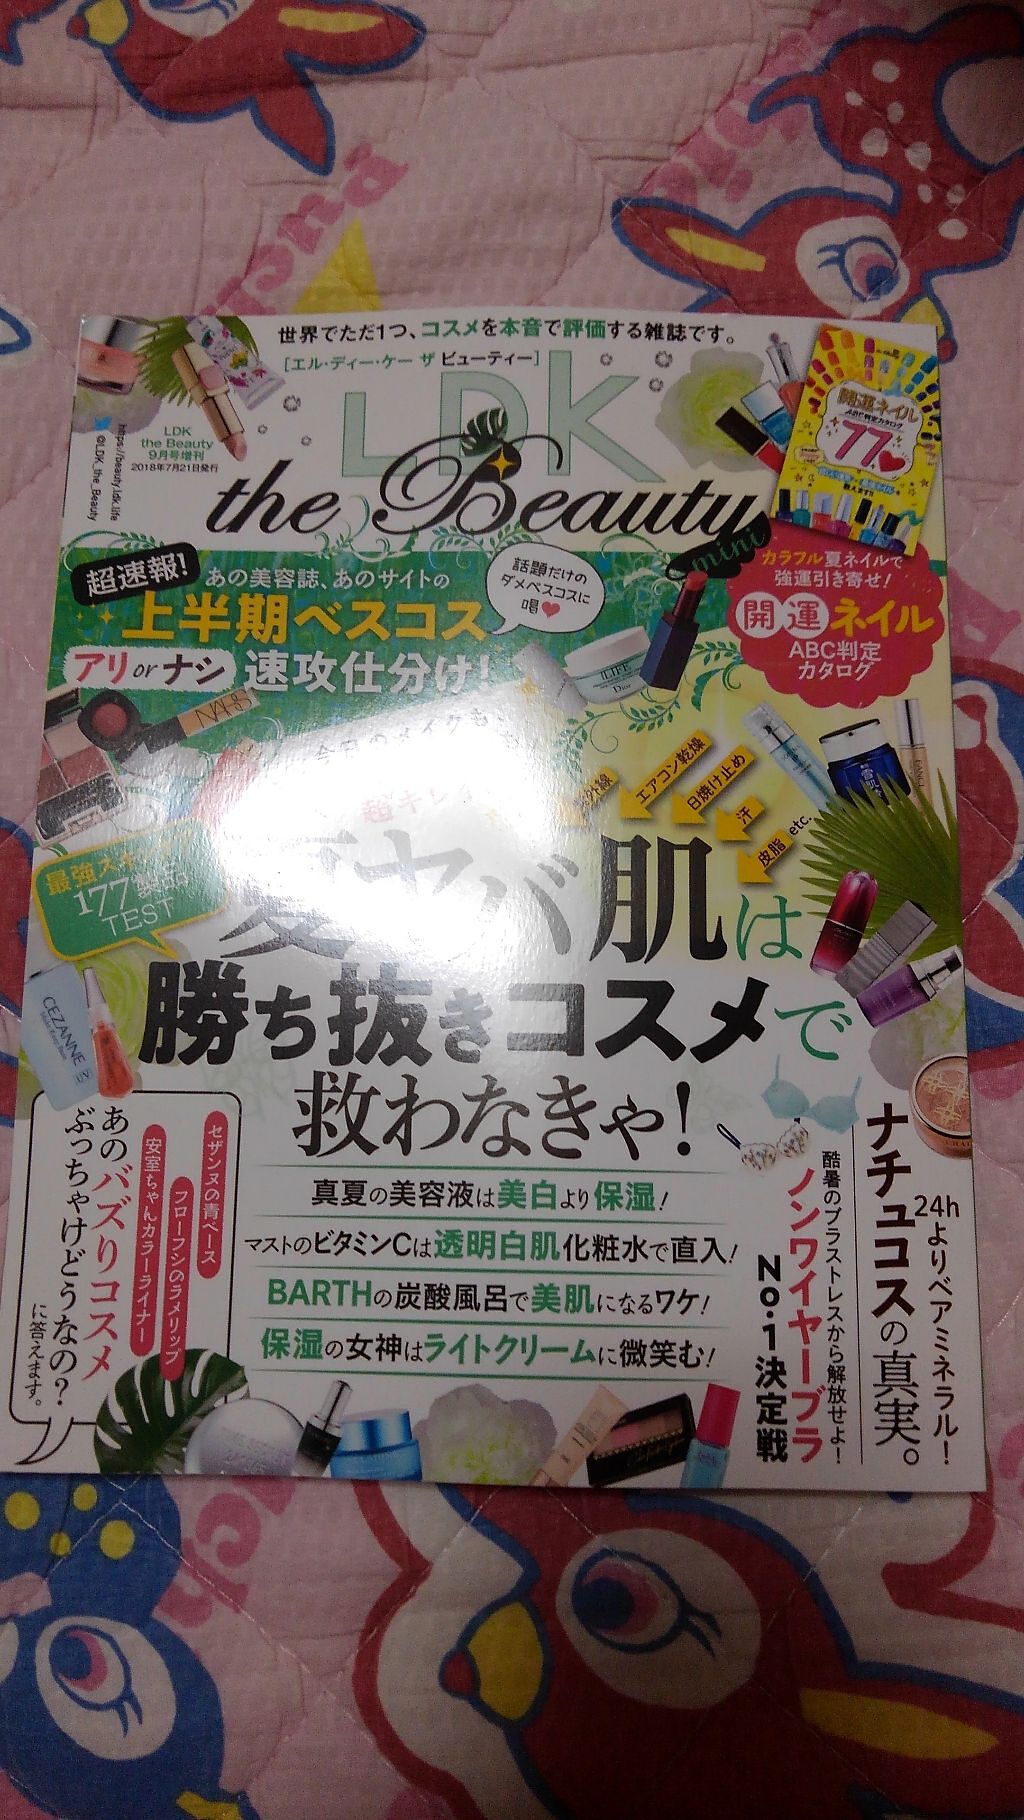 Ldk The Beauty 18年9月号 Ldk The Beautyの口コミ 購入品 Ldkthebeautymini By きてぃちゃん Lips